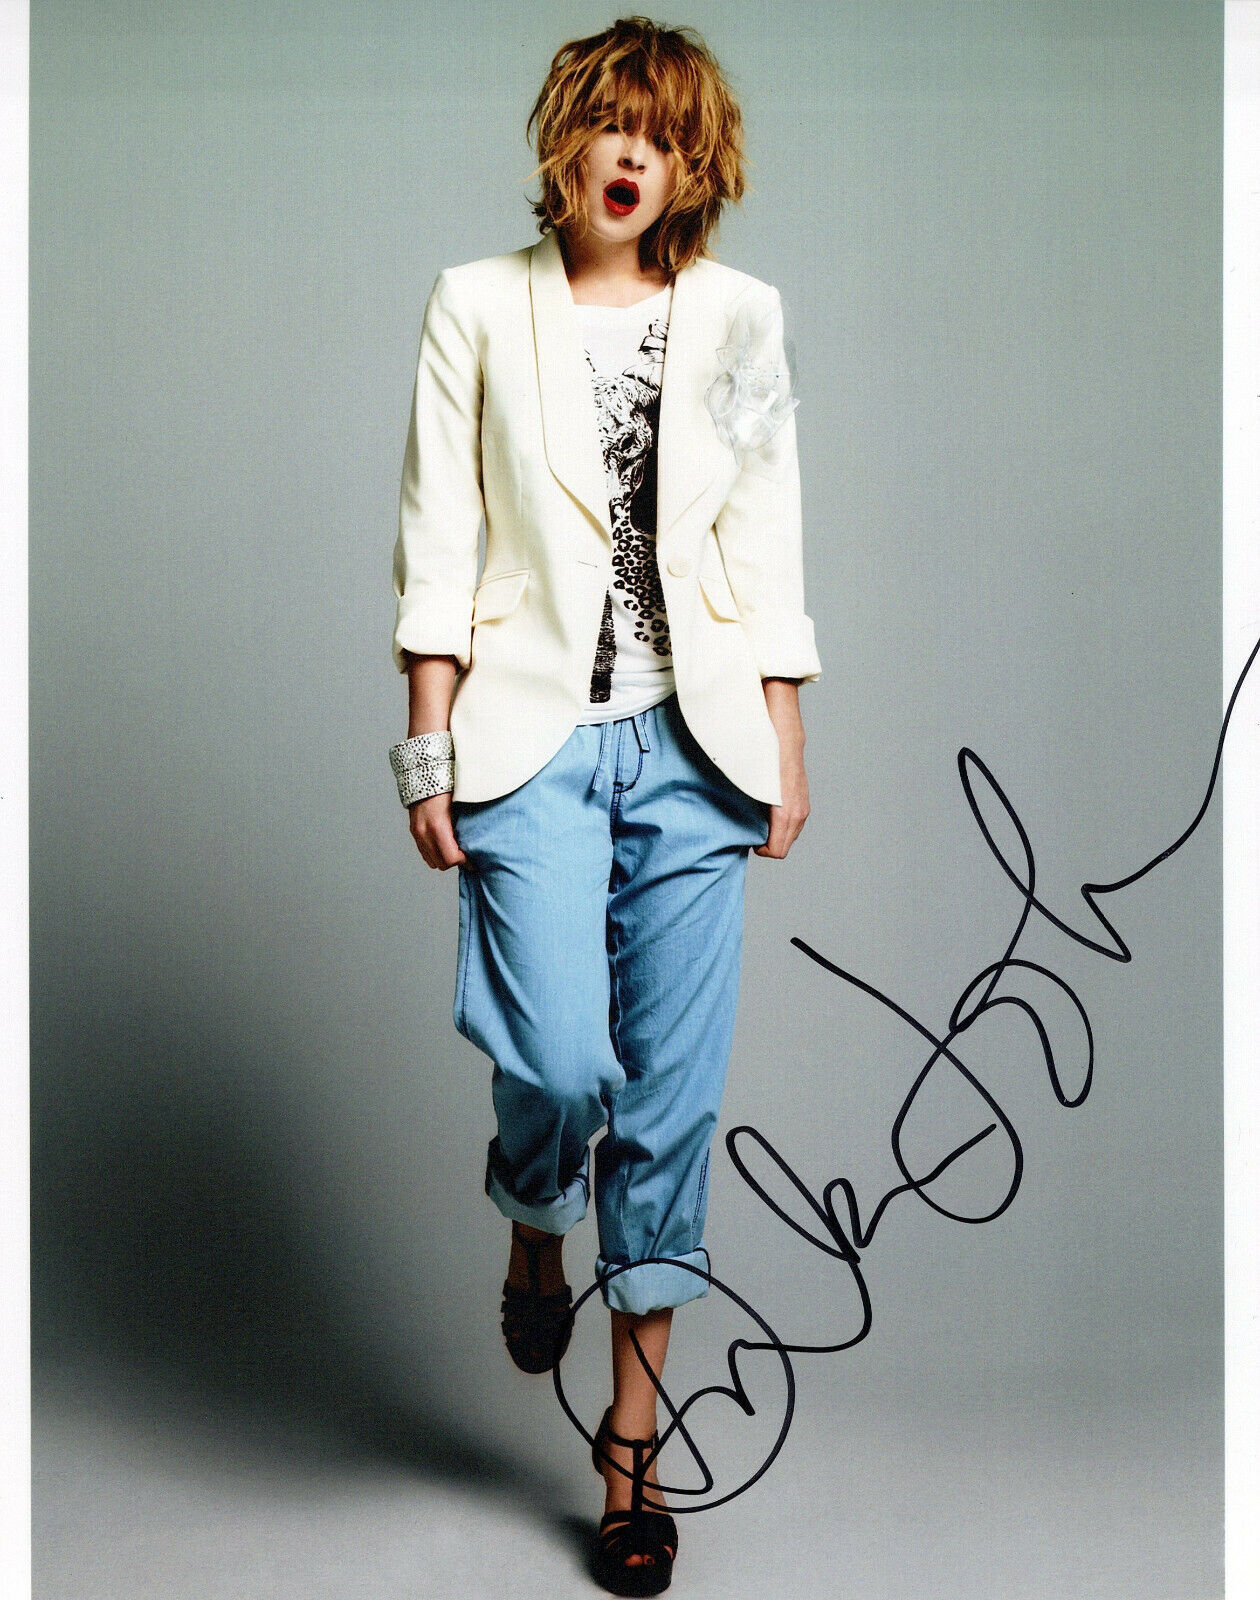 Dakota Johnson glamour shot autographed Photo Poster painting signed 8x10 #1